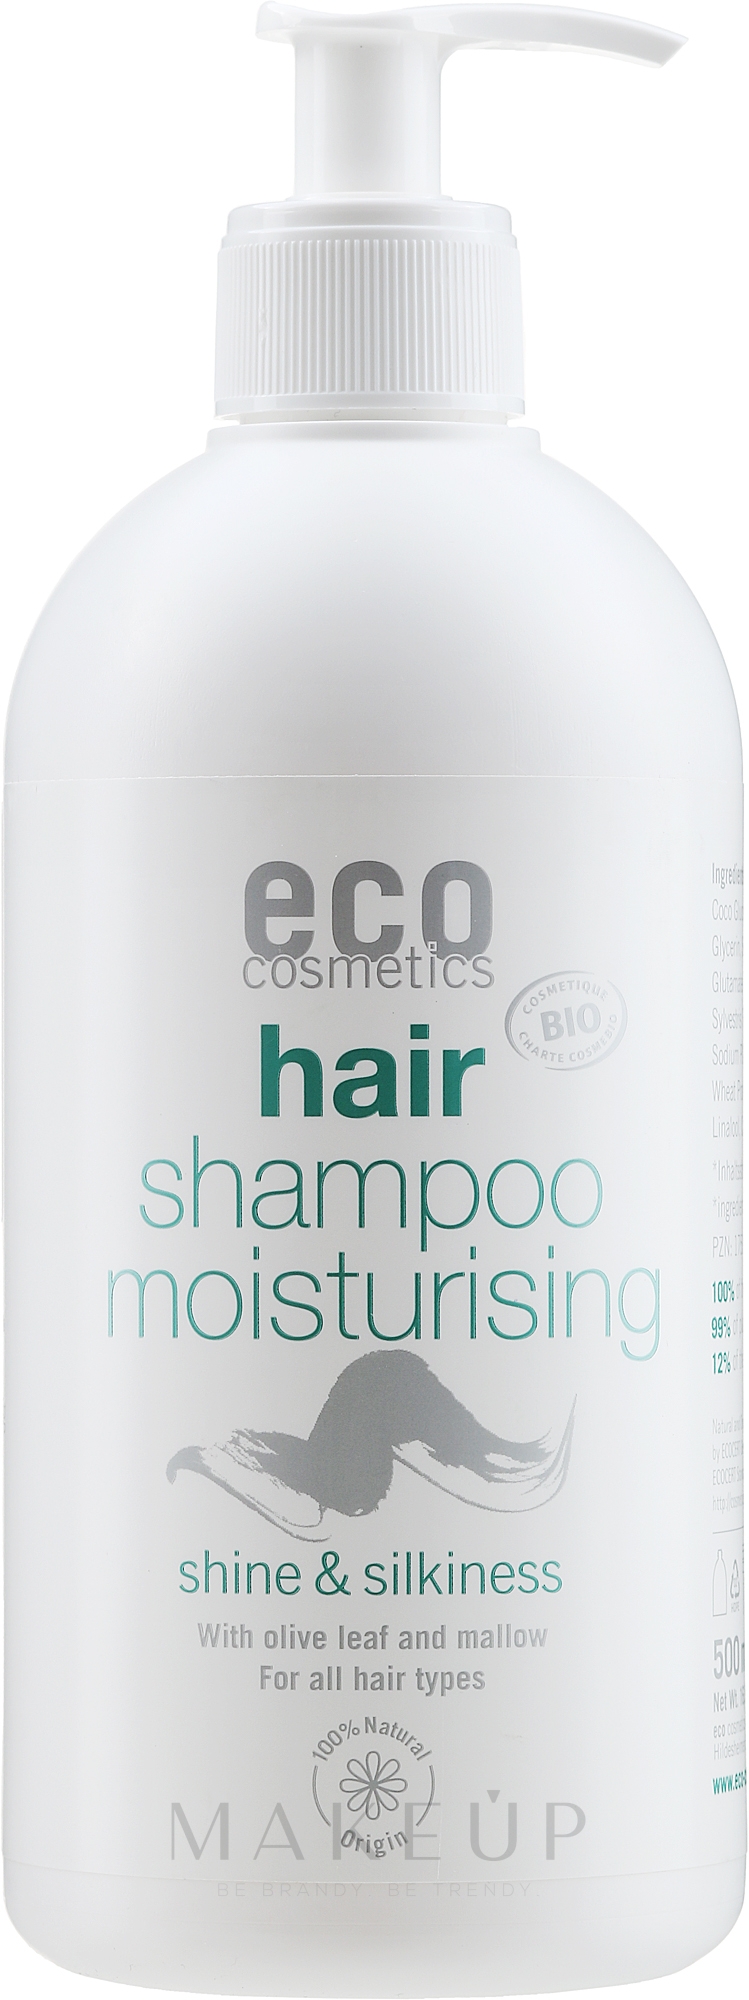 Feuchtigkeitsspendendes Haarshampoo mit Olivenblatt- und Malvenextrakt - Eco Cosmetics Hair Shampoo Moisturising Shine & Silkiness — Bild 500 ml